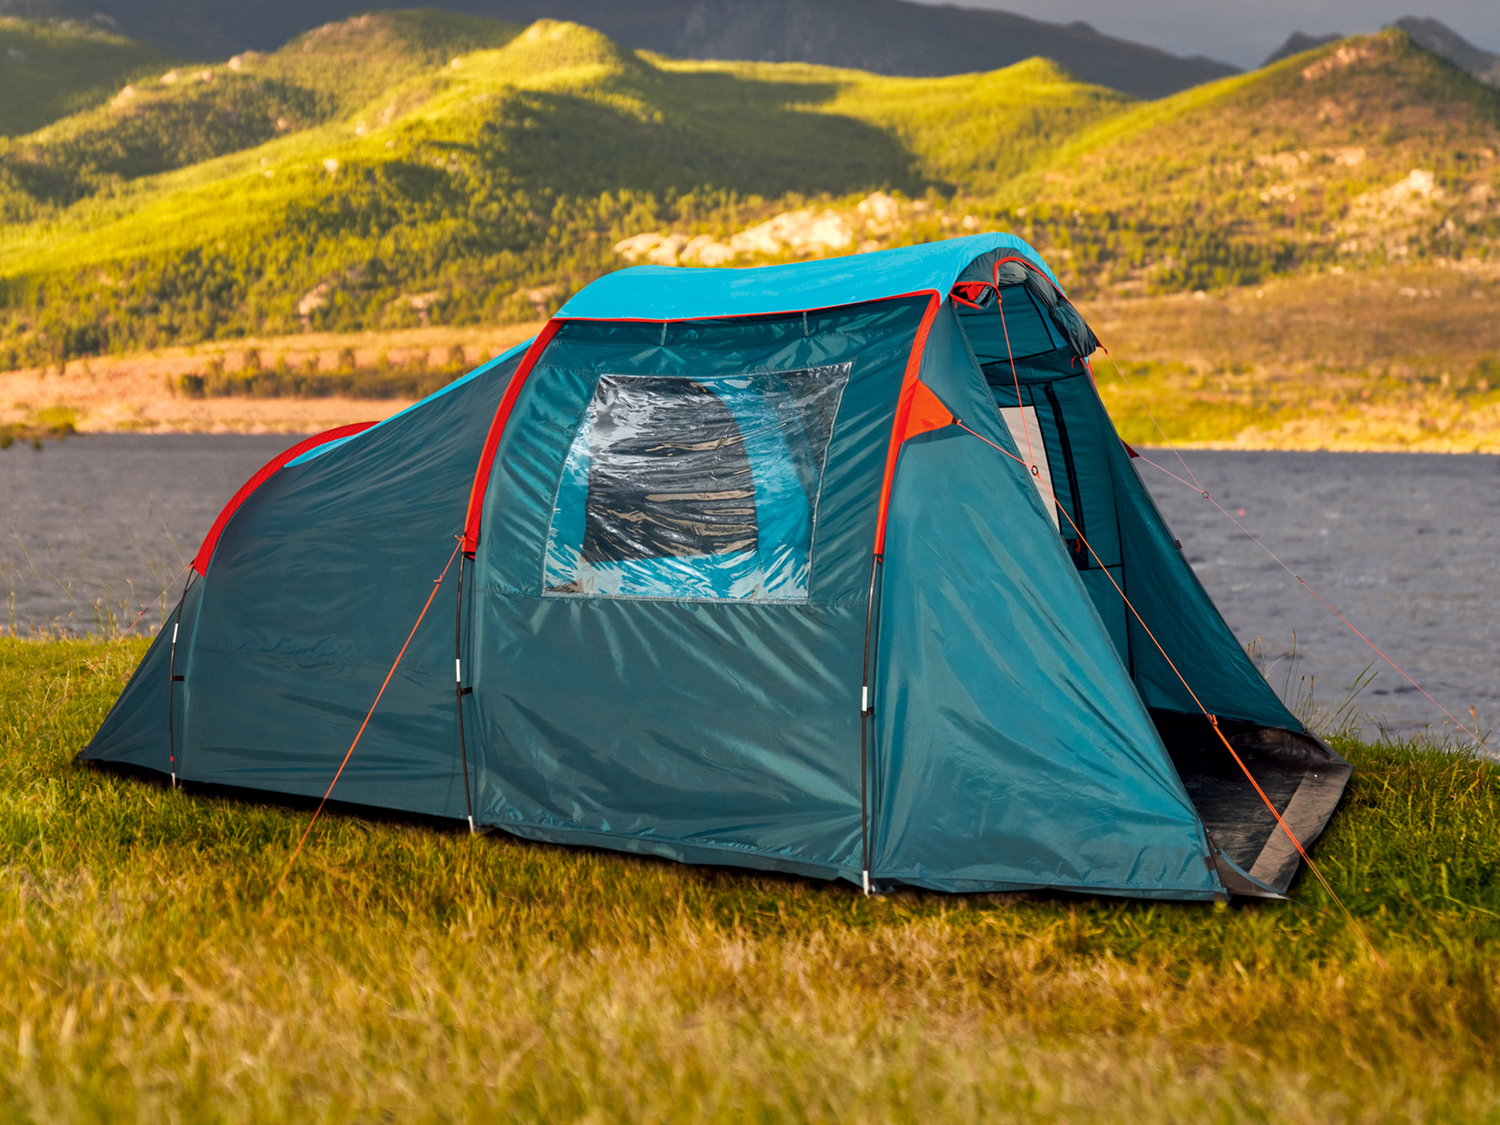 Tenda da campeggio Rocktrail, prezzo 99.00 &#8364; 
4 posti 
- Facile da montare ...